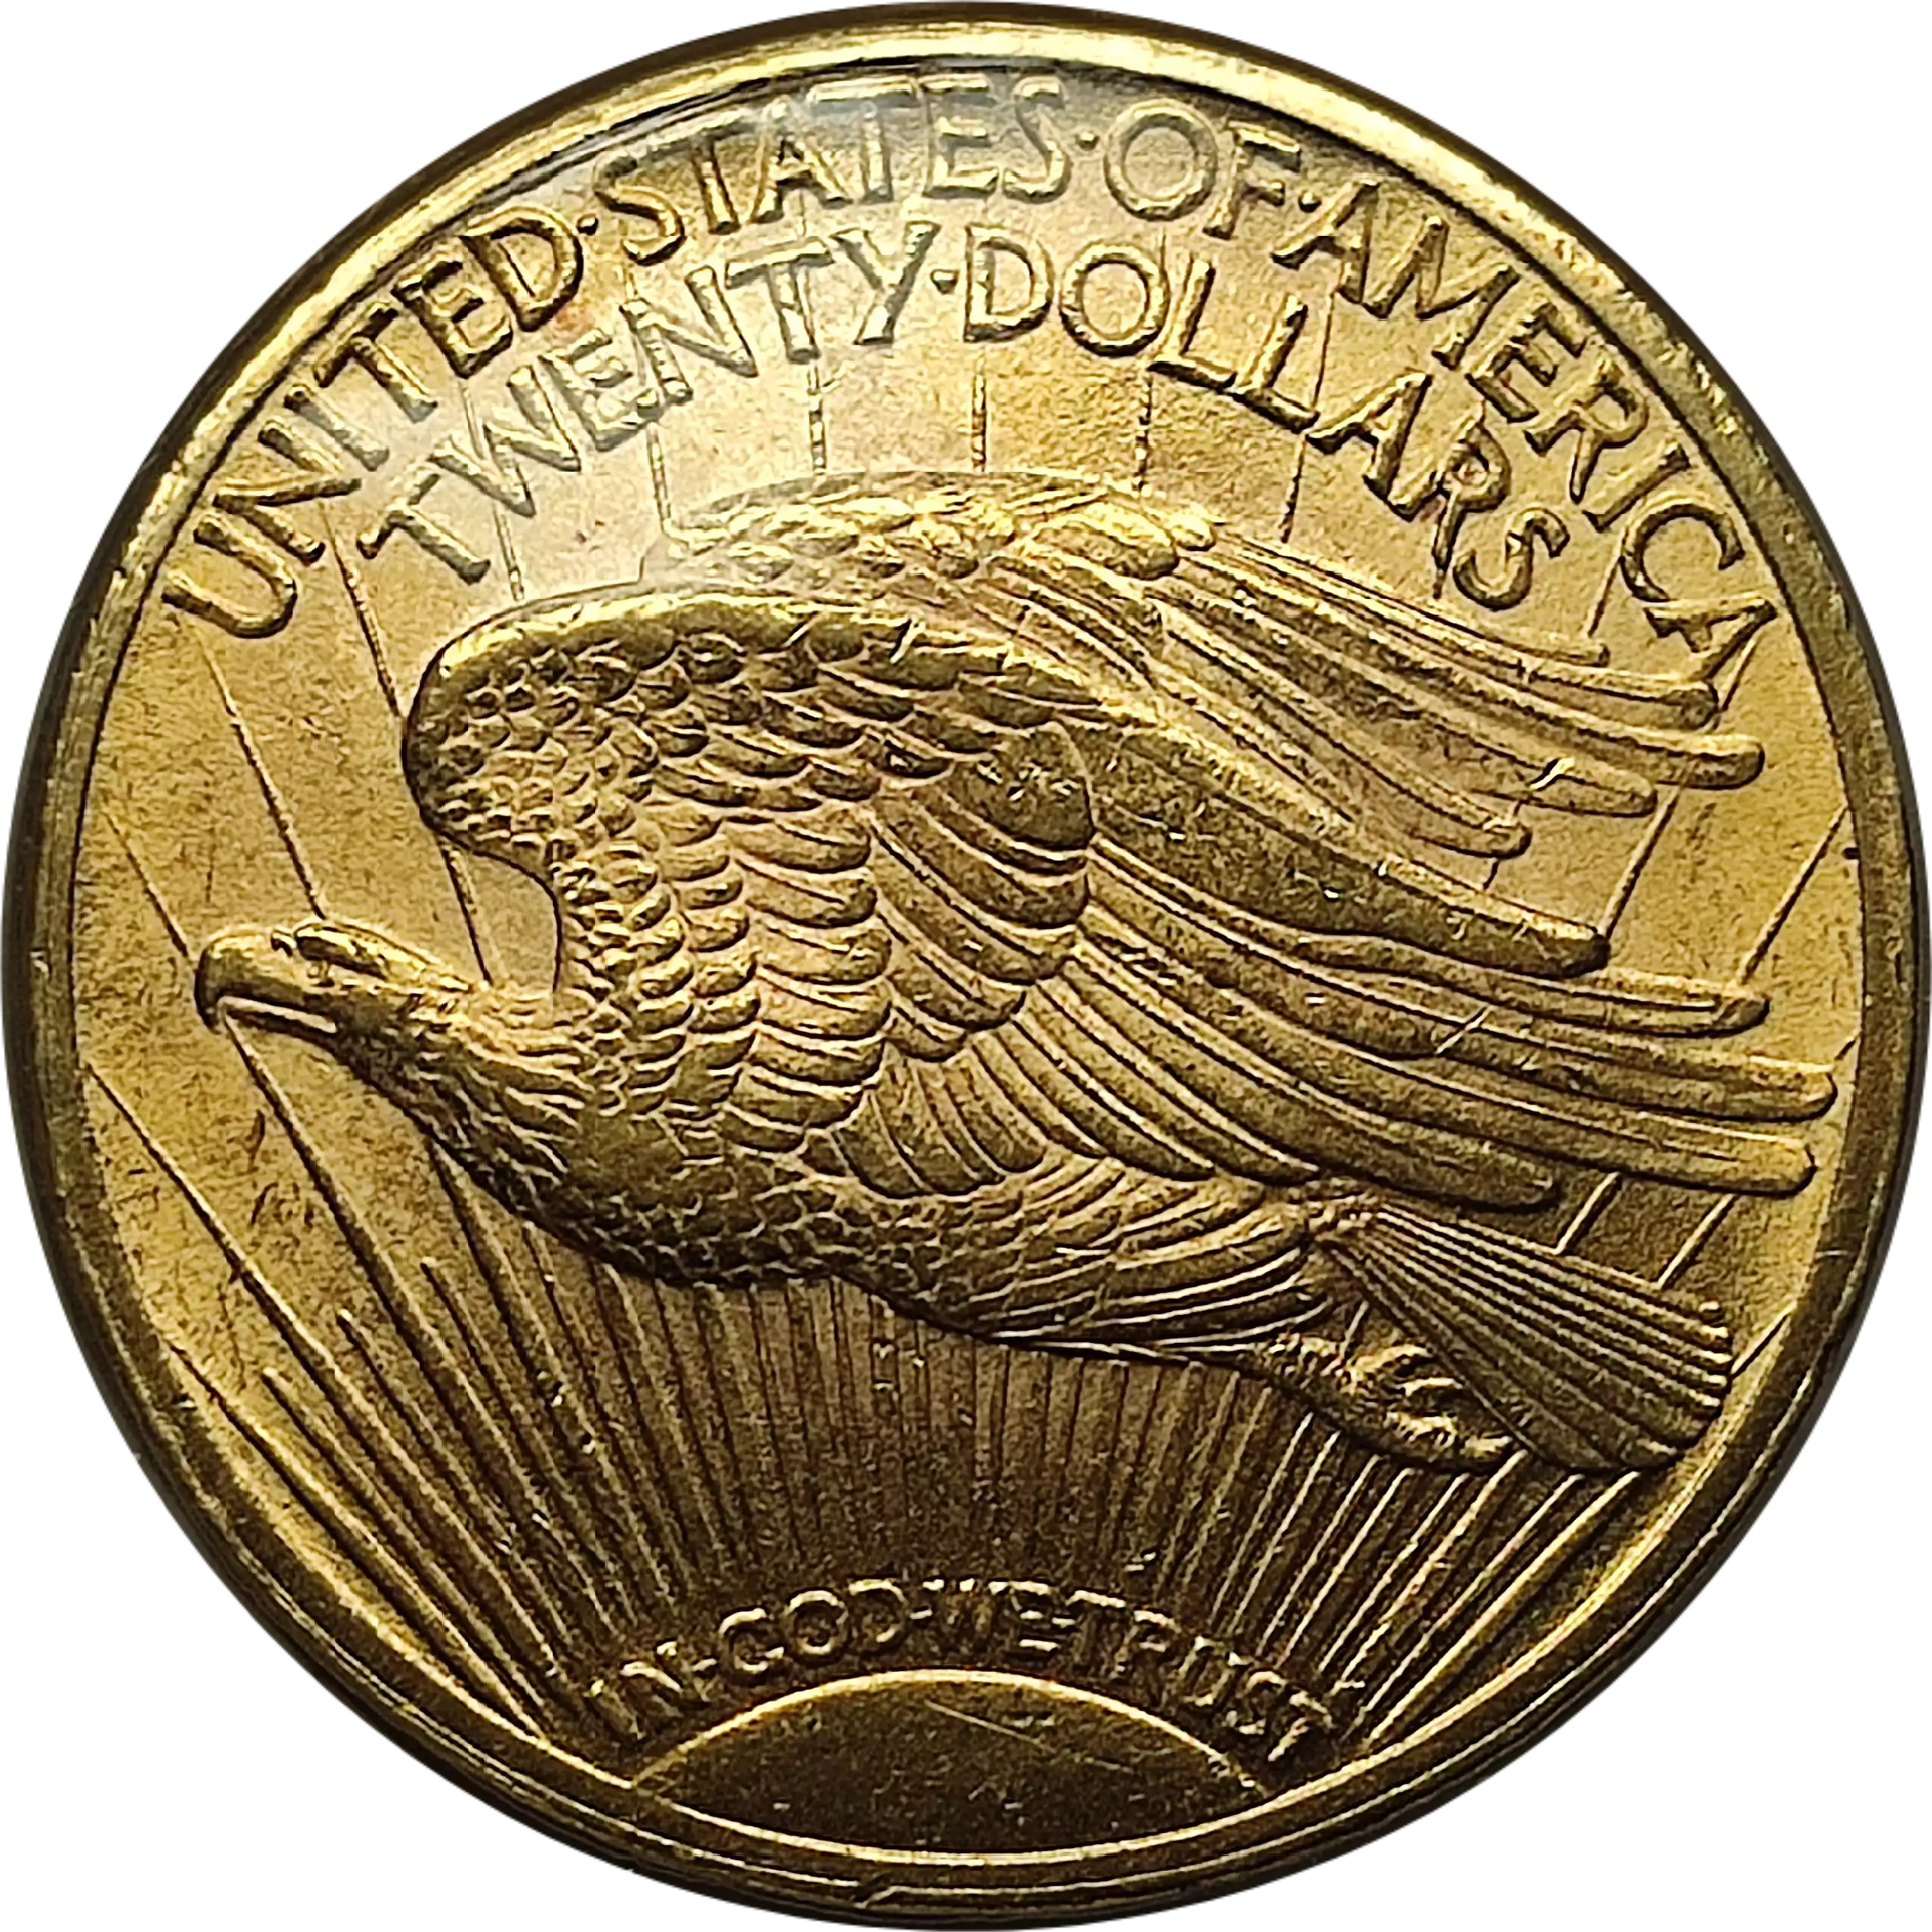 Amerykański Orzeł 1 uncja 1924 - złota moneta